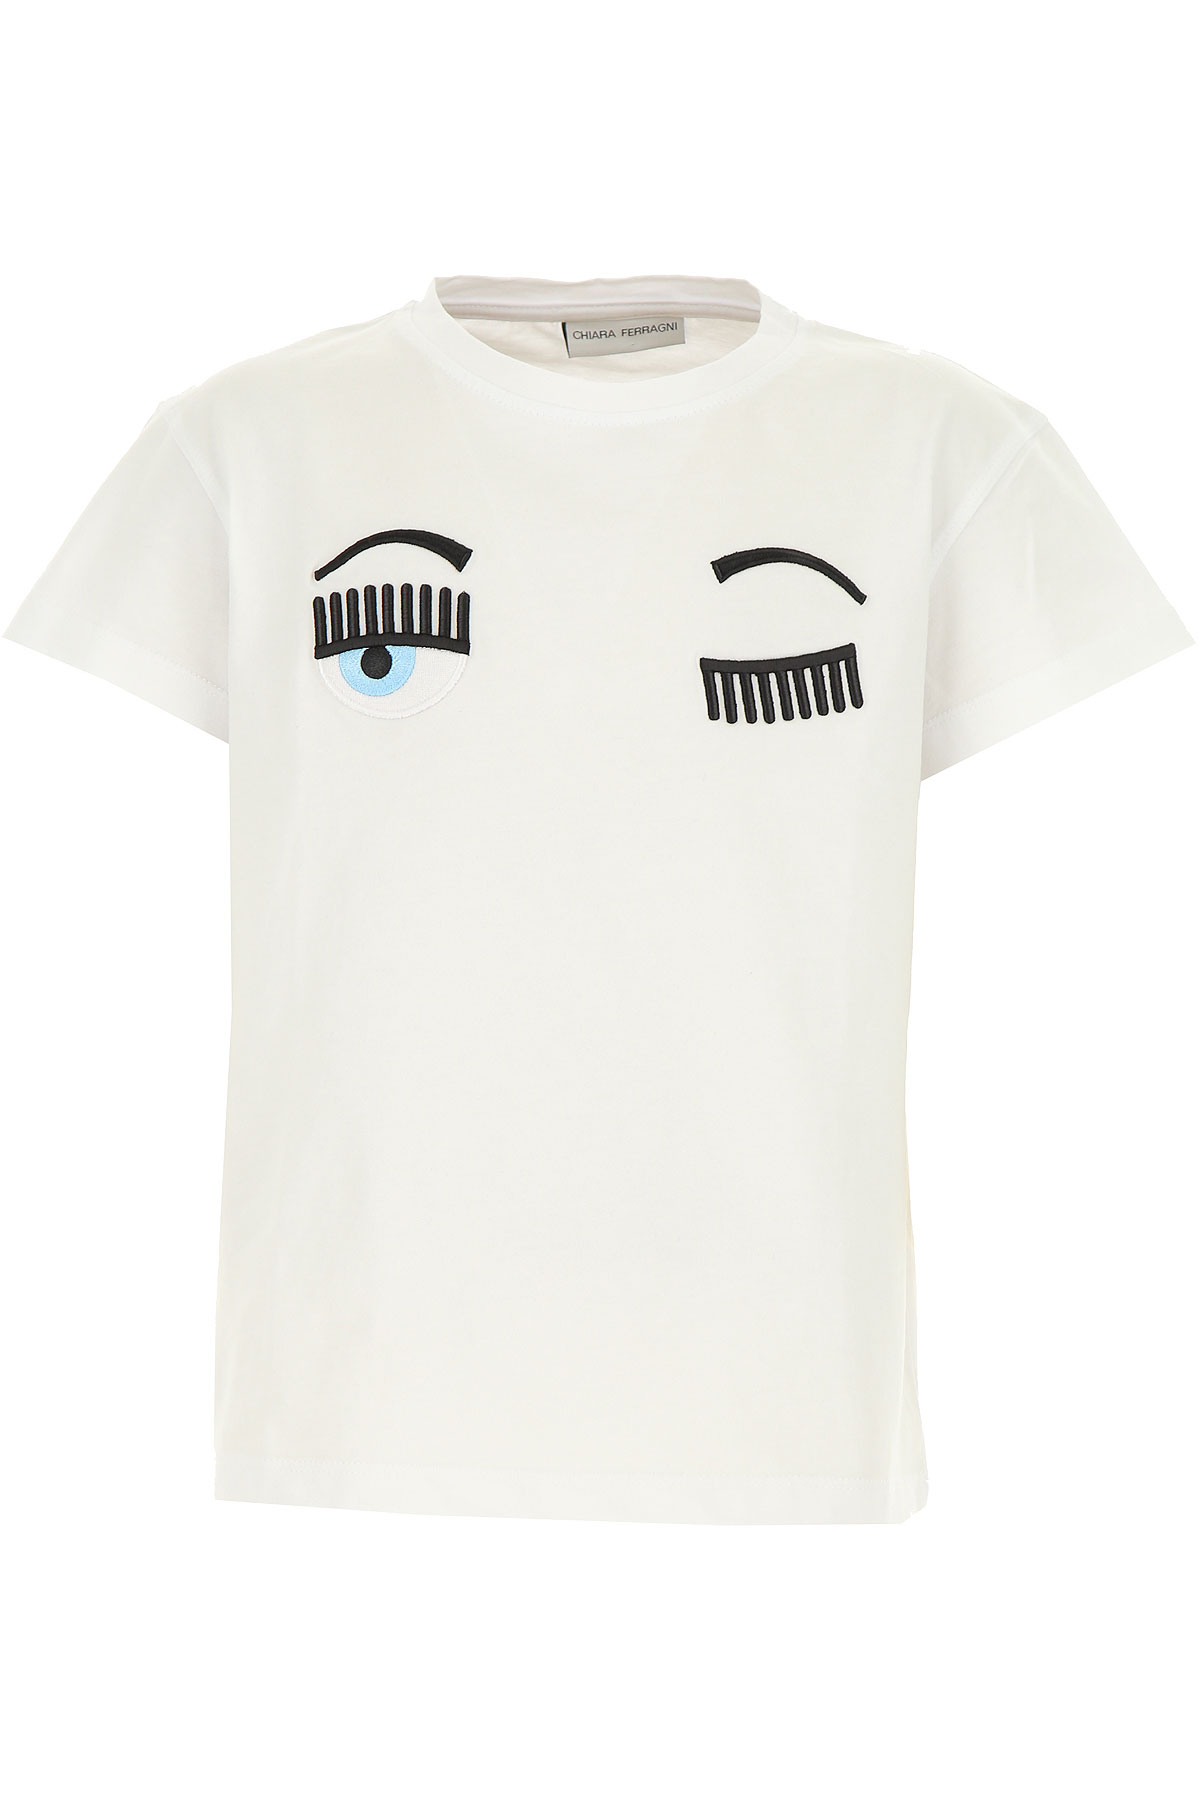 Chiara Ferragni Kinder T-Shirt für Mädchen Günstig im Sale, Weiss, Baumwolle, 2017, 10Y 12Y 14Y